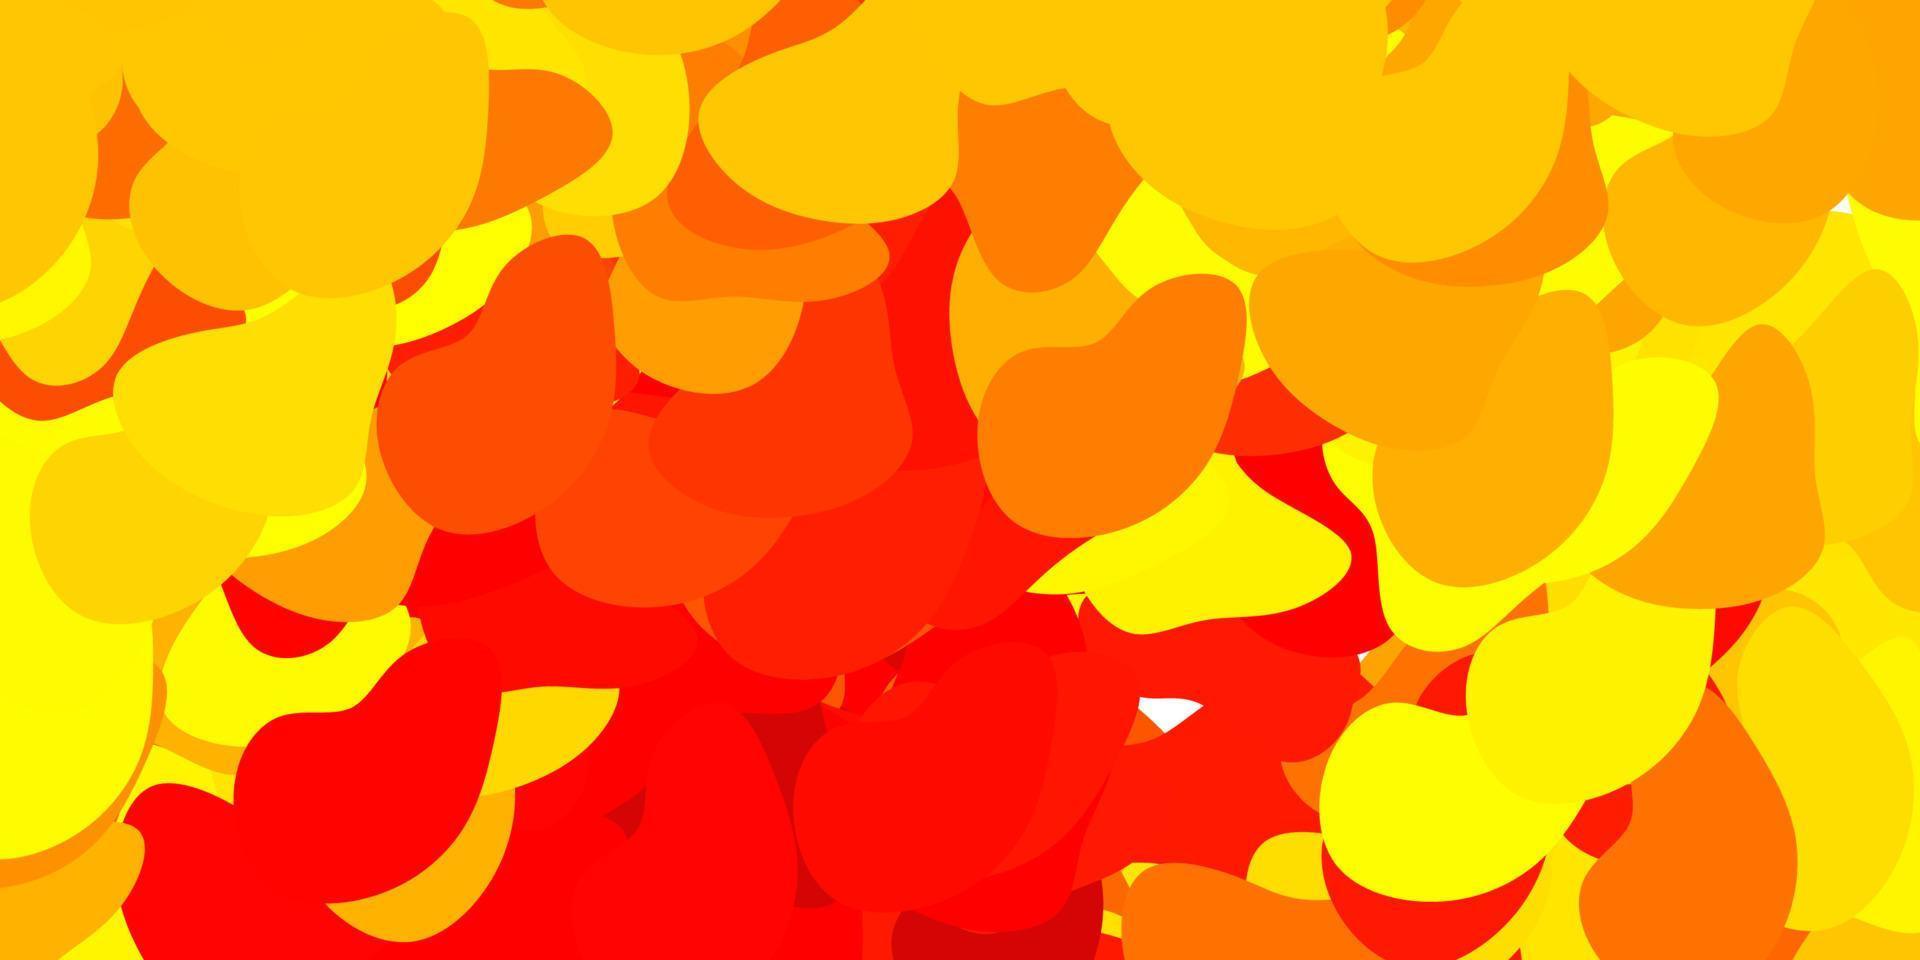 plantilla de vector rojo, amarillo claro con formas abstractas.